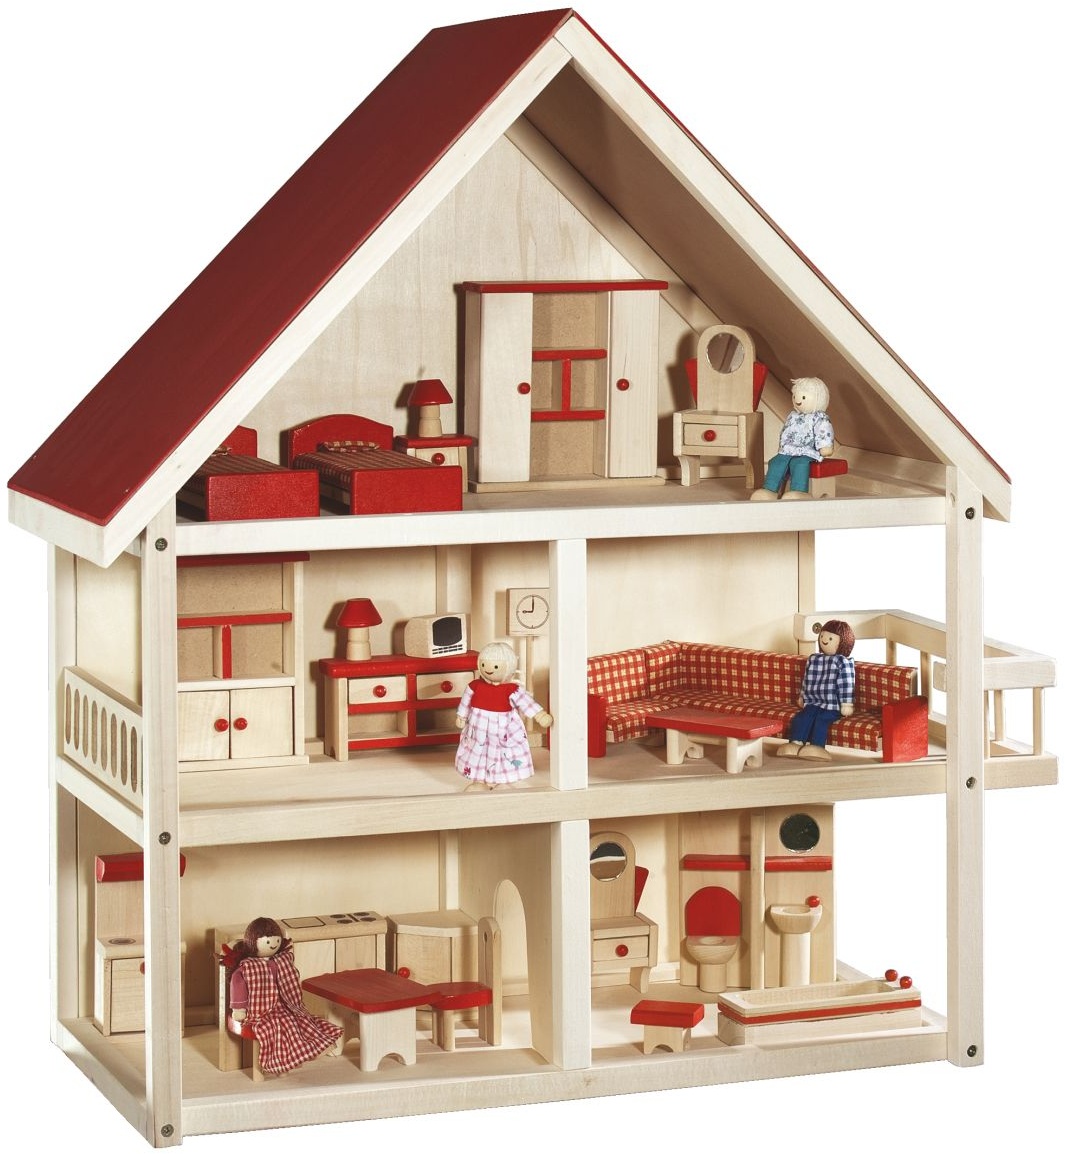 roba Puppenhaus, Puppenvilla inkl. Möbel und Puppen, Mädchen Spielzeug, Holz natur